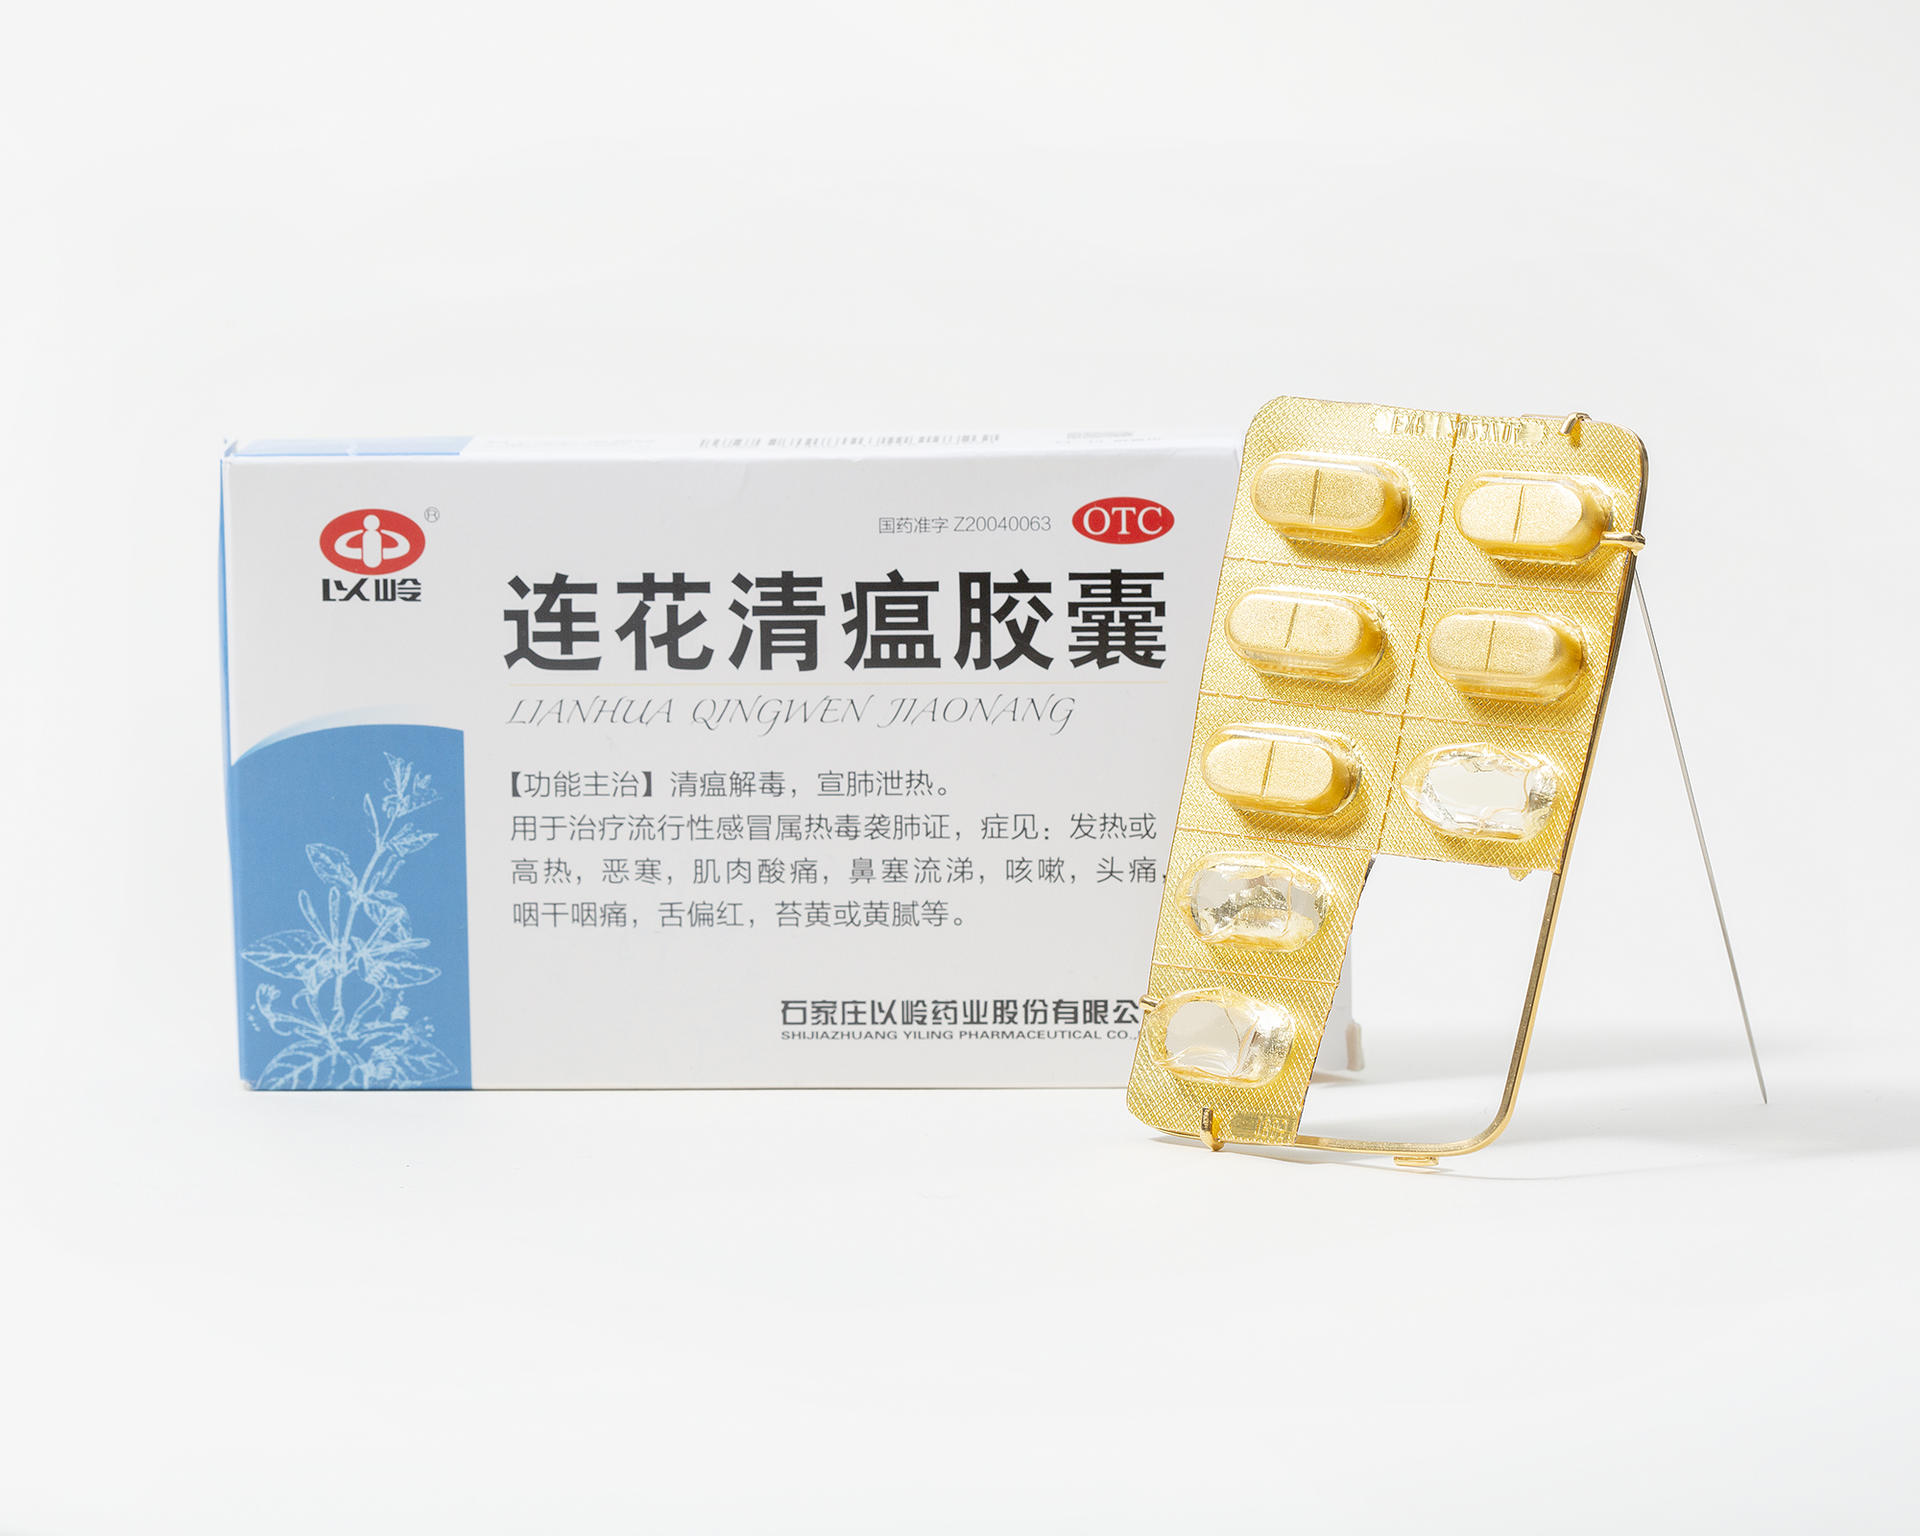 连花清瘟 (Lian Hua Qing Wen) is a brooch, made with empty pill package and encased the gold-plated silver pill. 